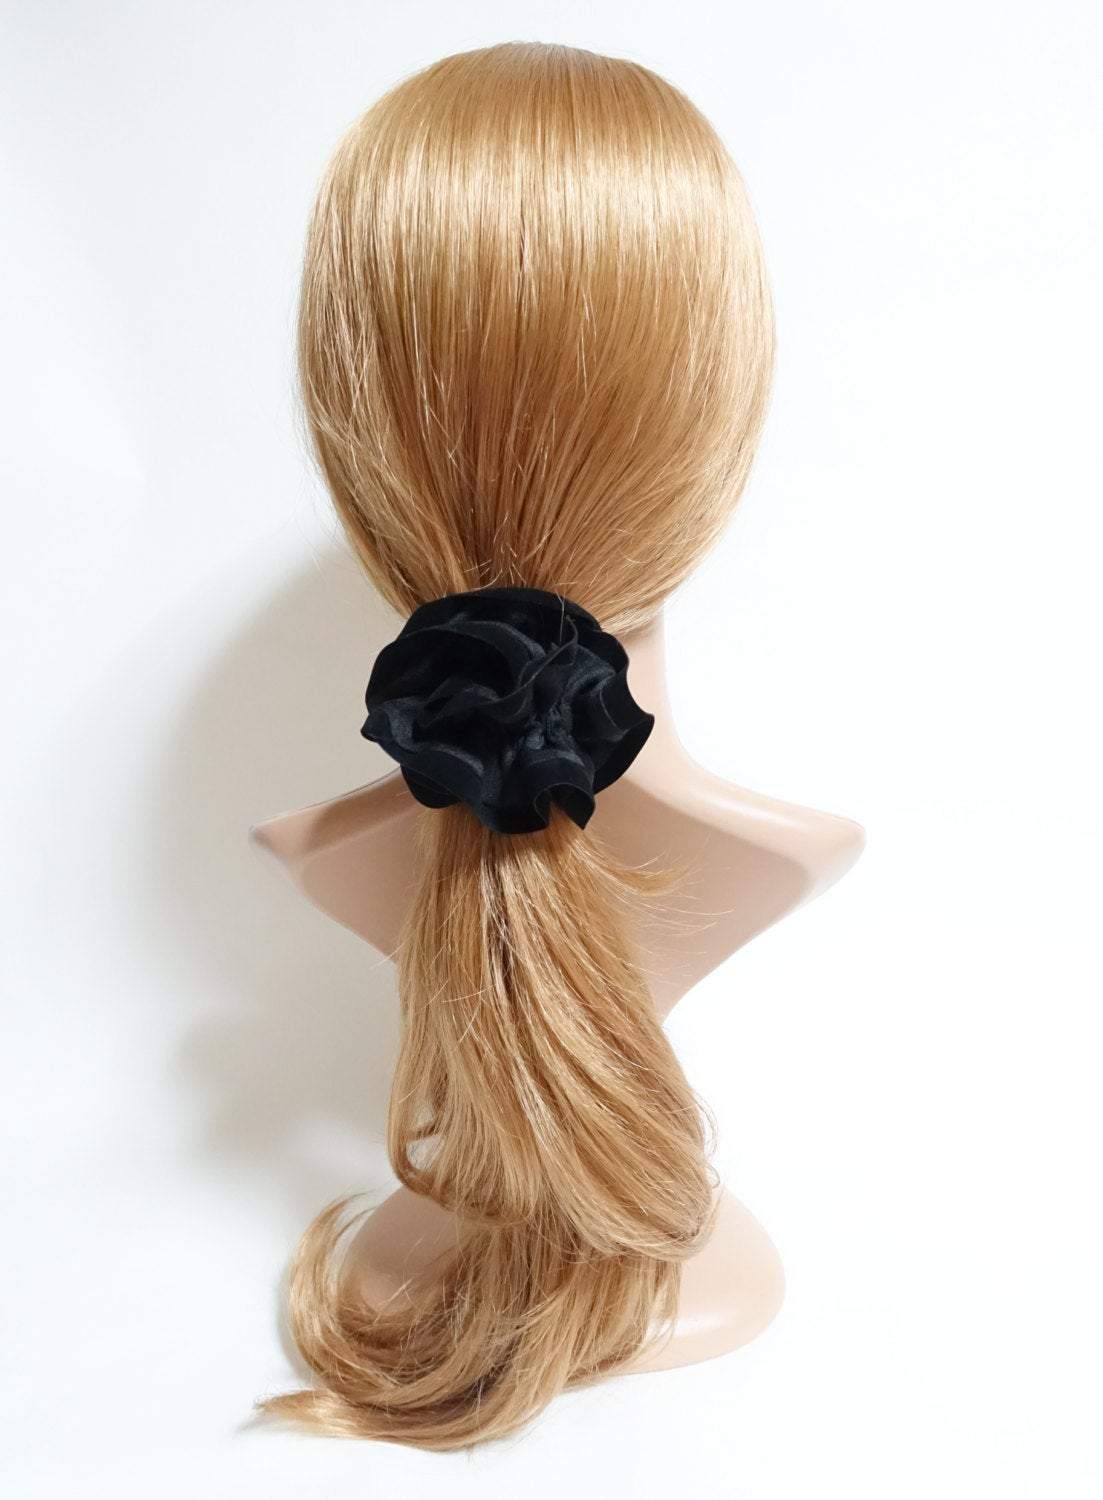 veryshine.com scrunchies/hair holder suede trim scrunchies Fall Winter fashion hair tie women hair accessory